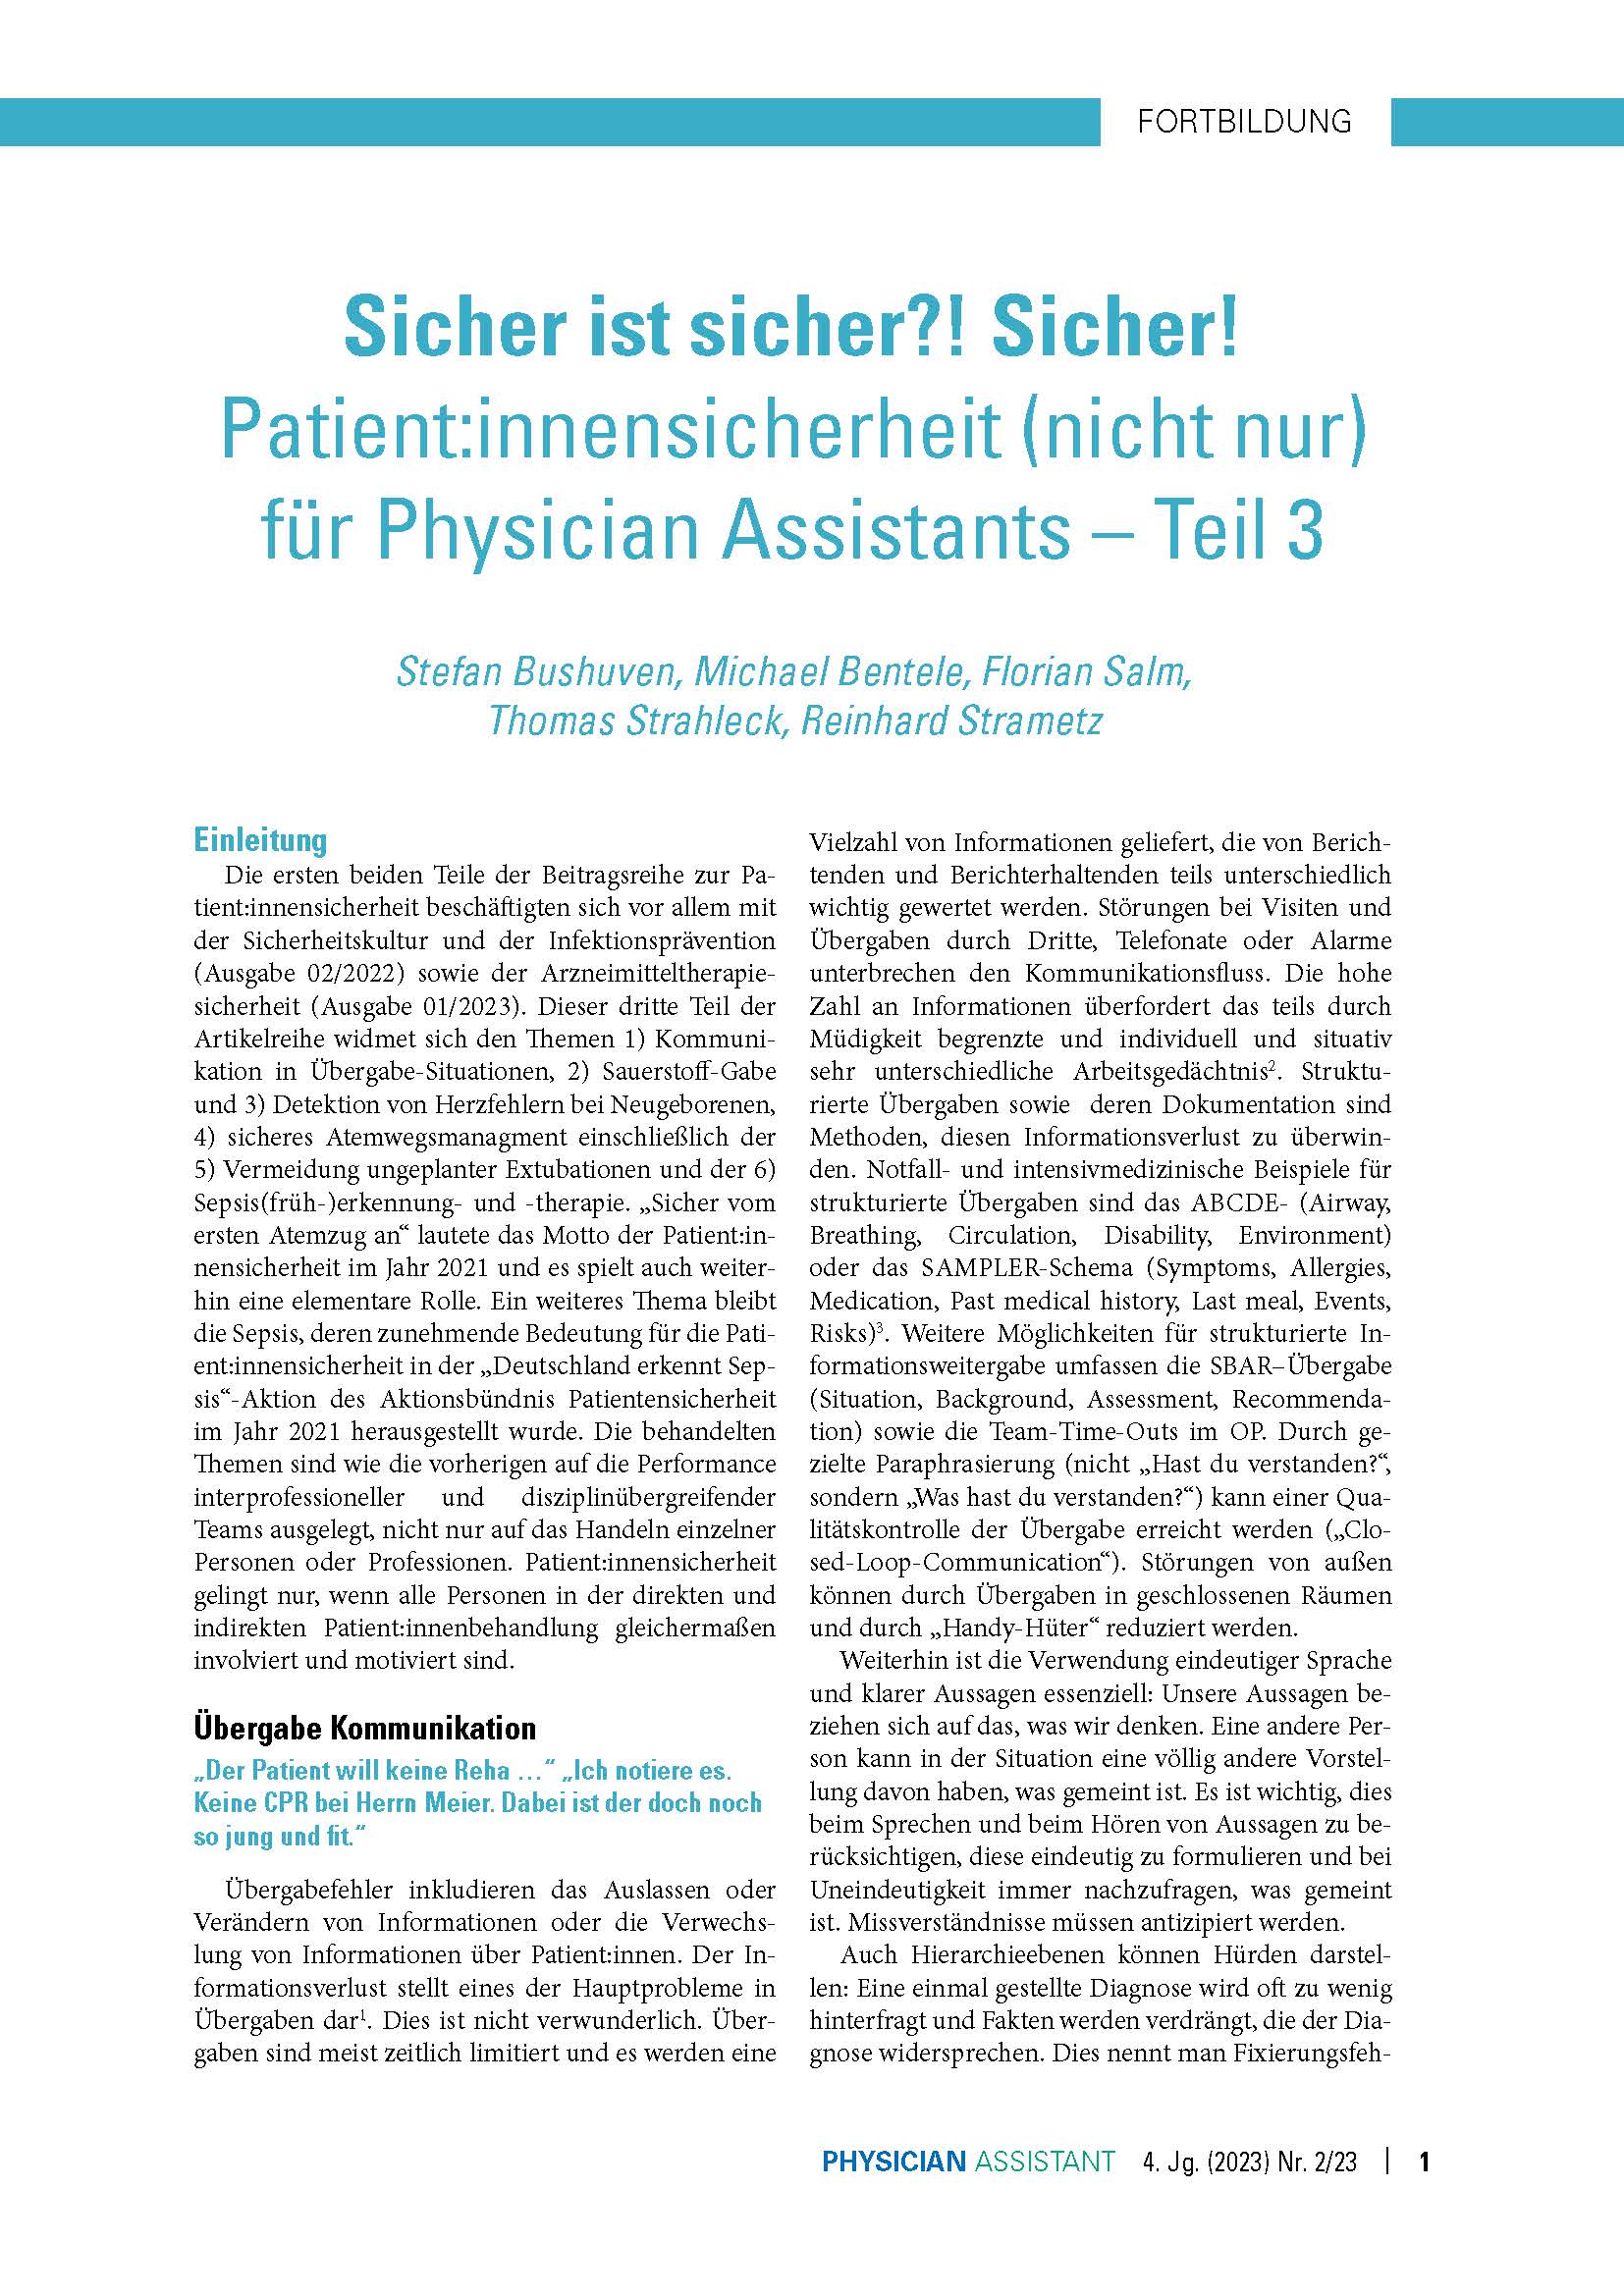 online only Patient:innensicherheit, Teil 3